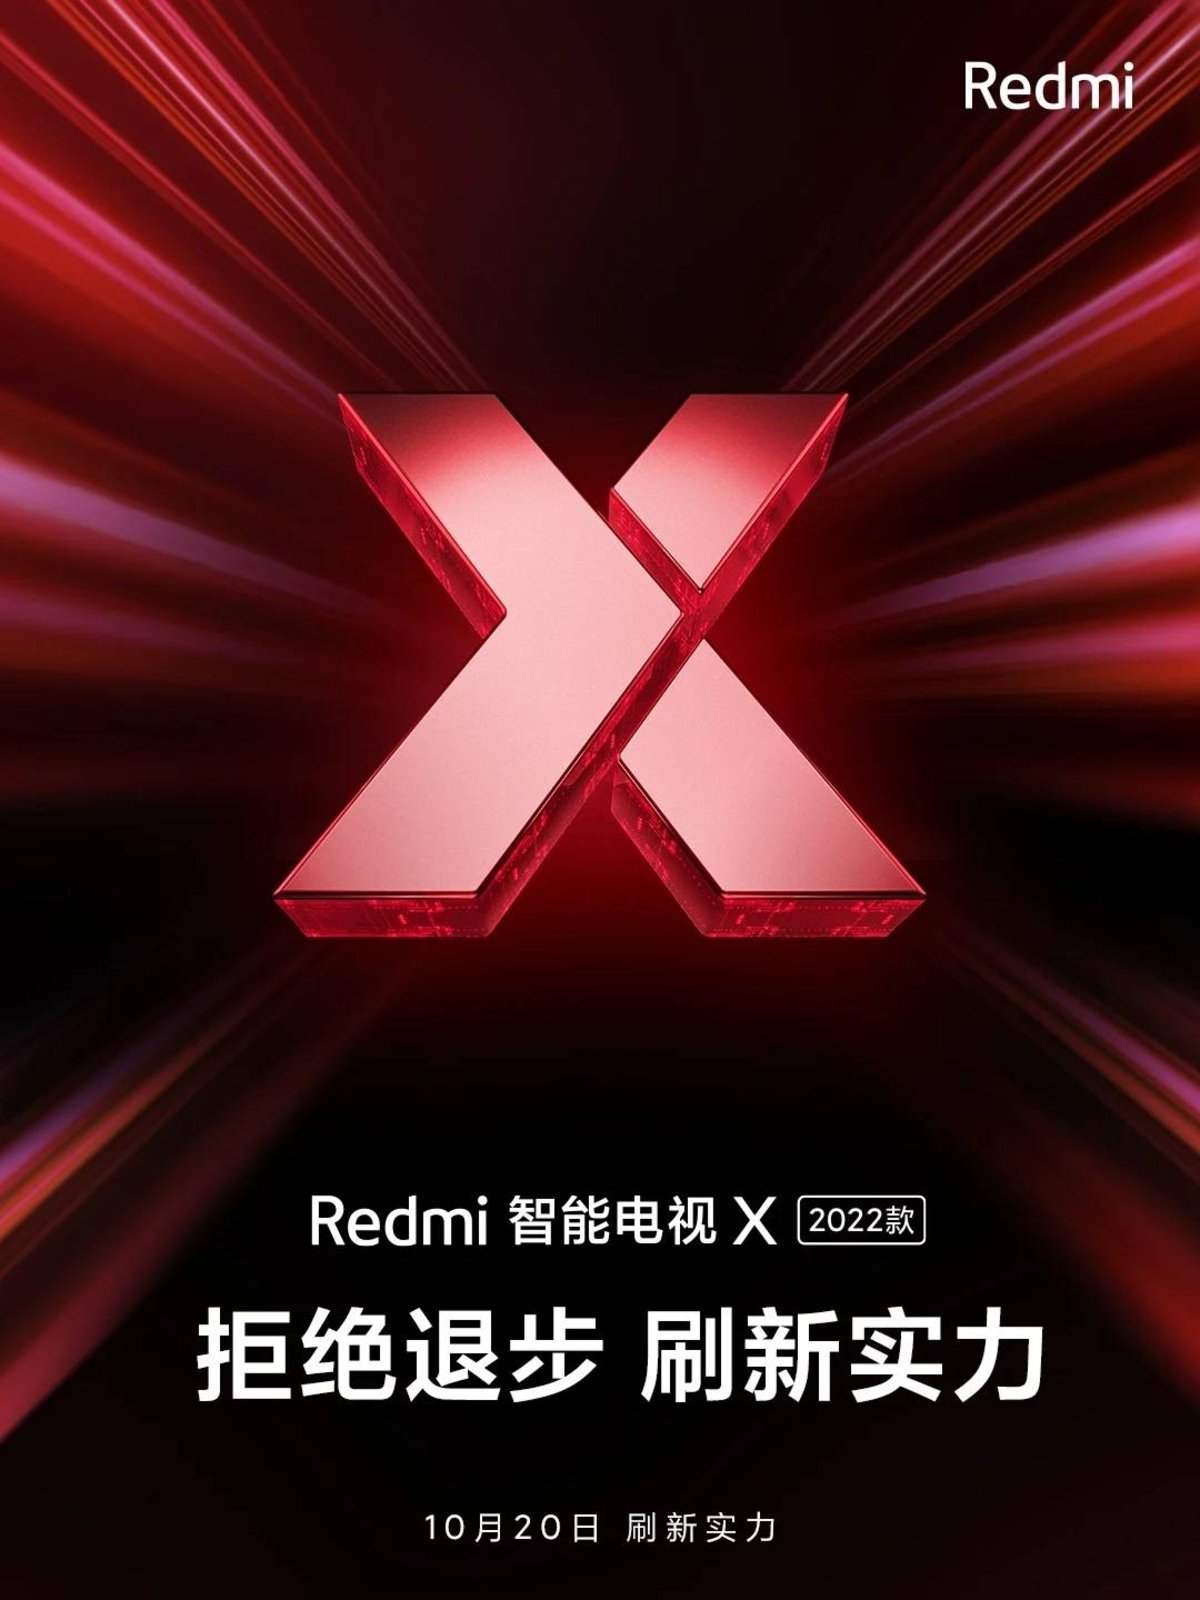 Poster anuncio Redmi Smart TV X 2022